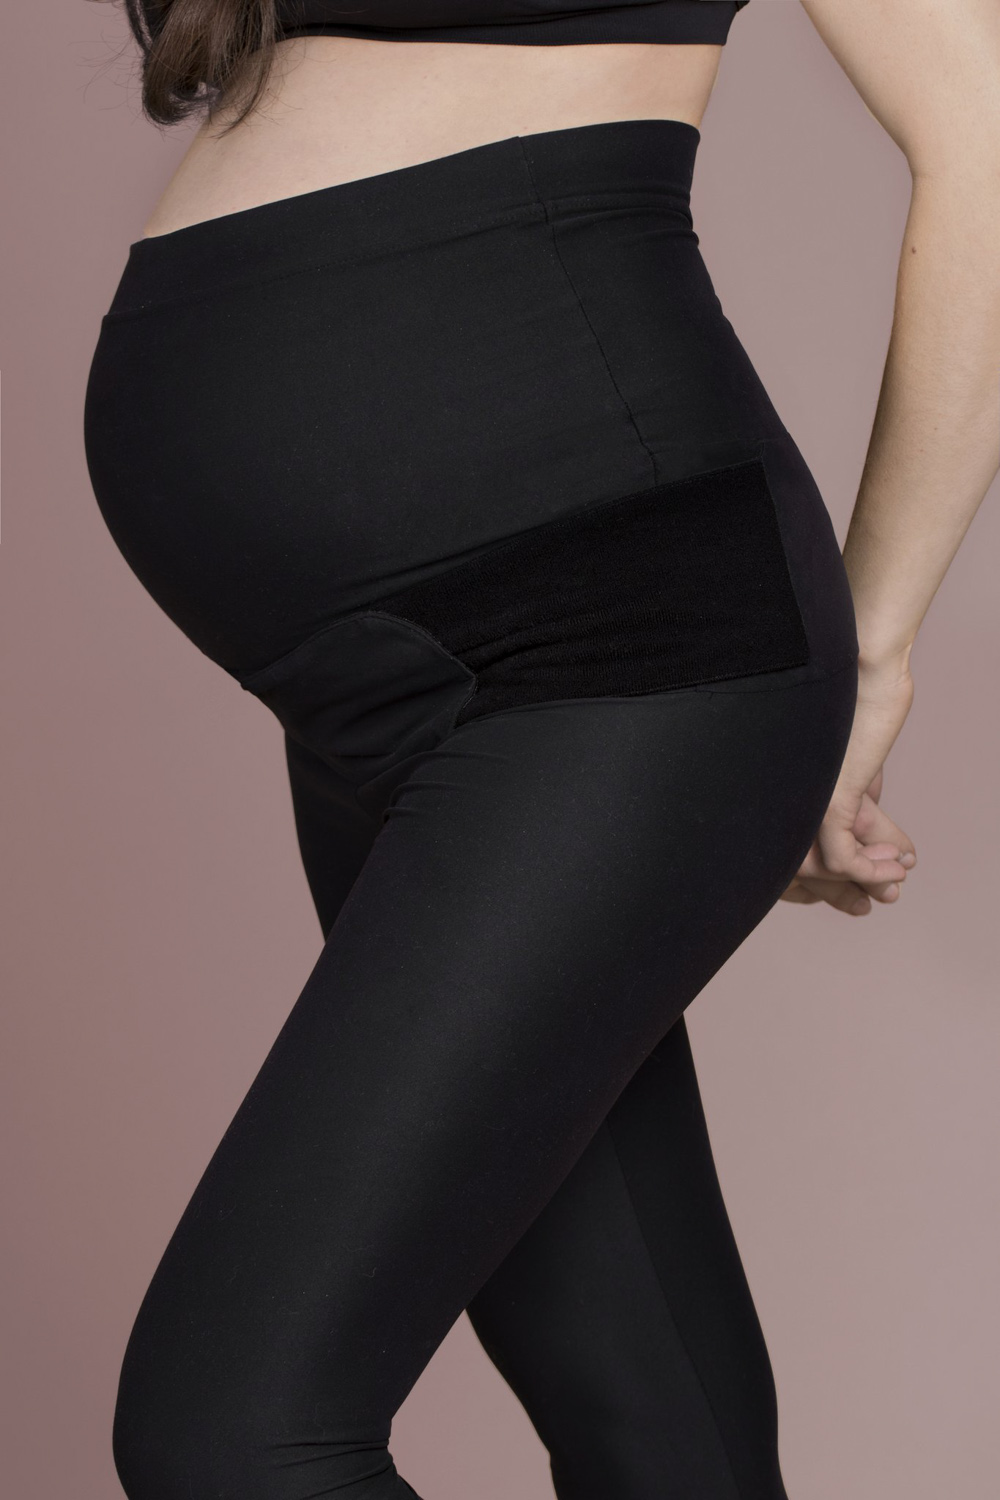 SRC Pregnancy Legging over the bump – Preggi Central